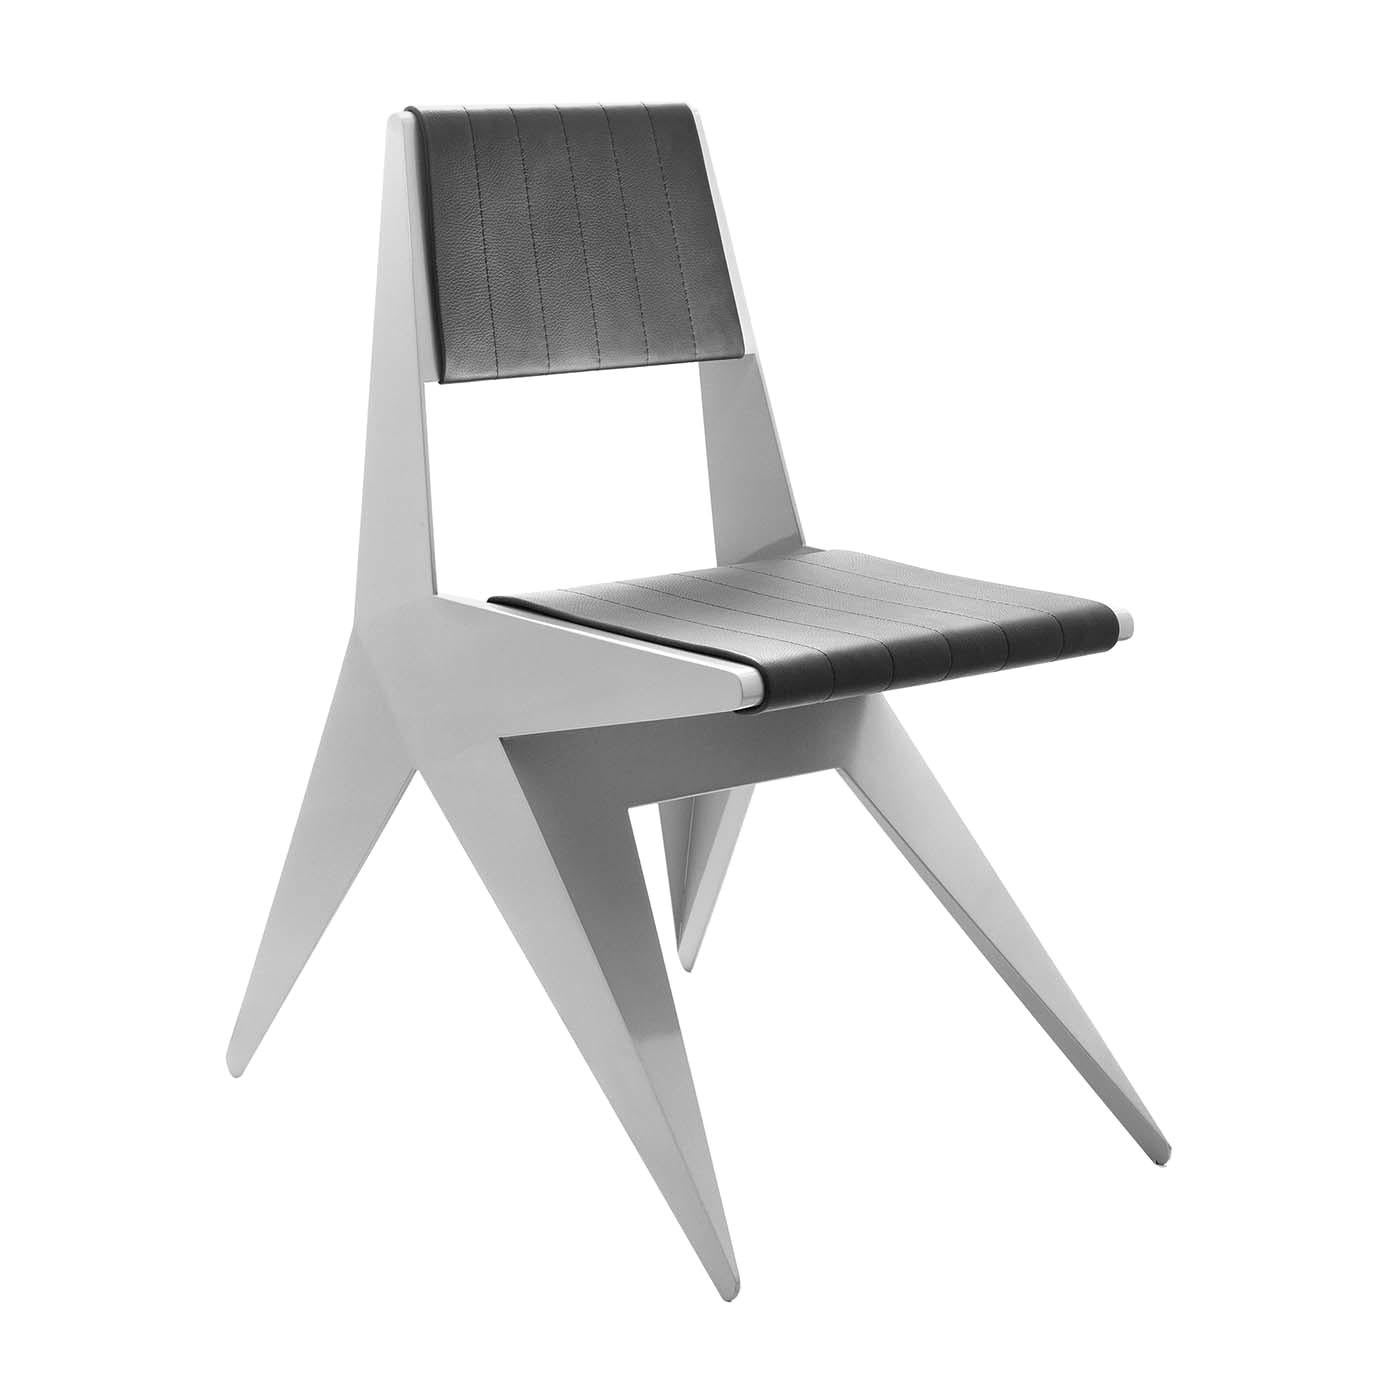 Star Silver Chair by Antonio Pio Saracino